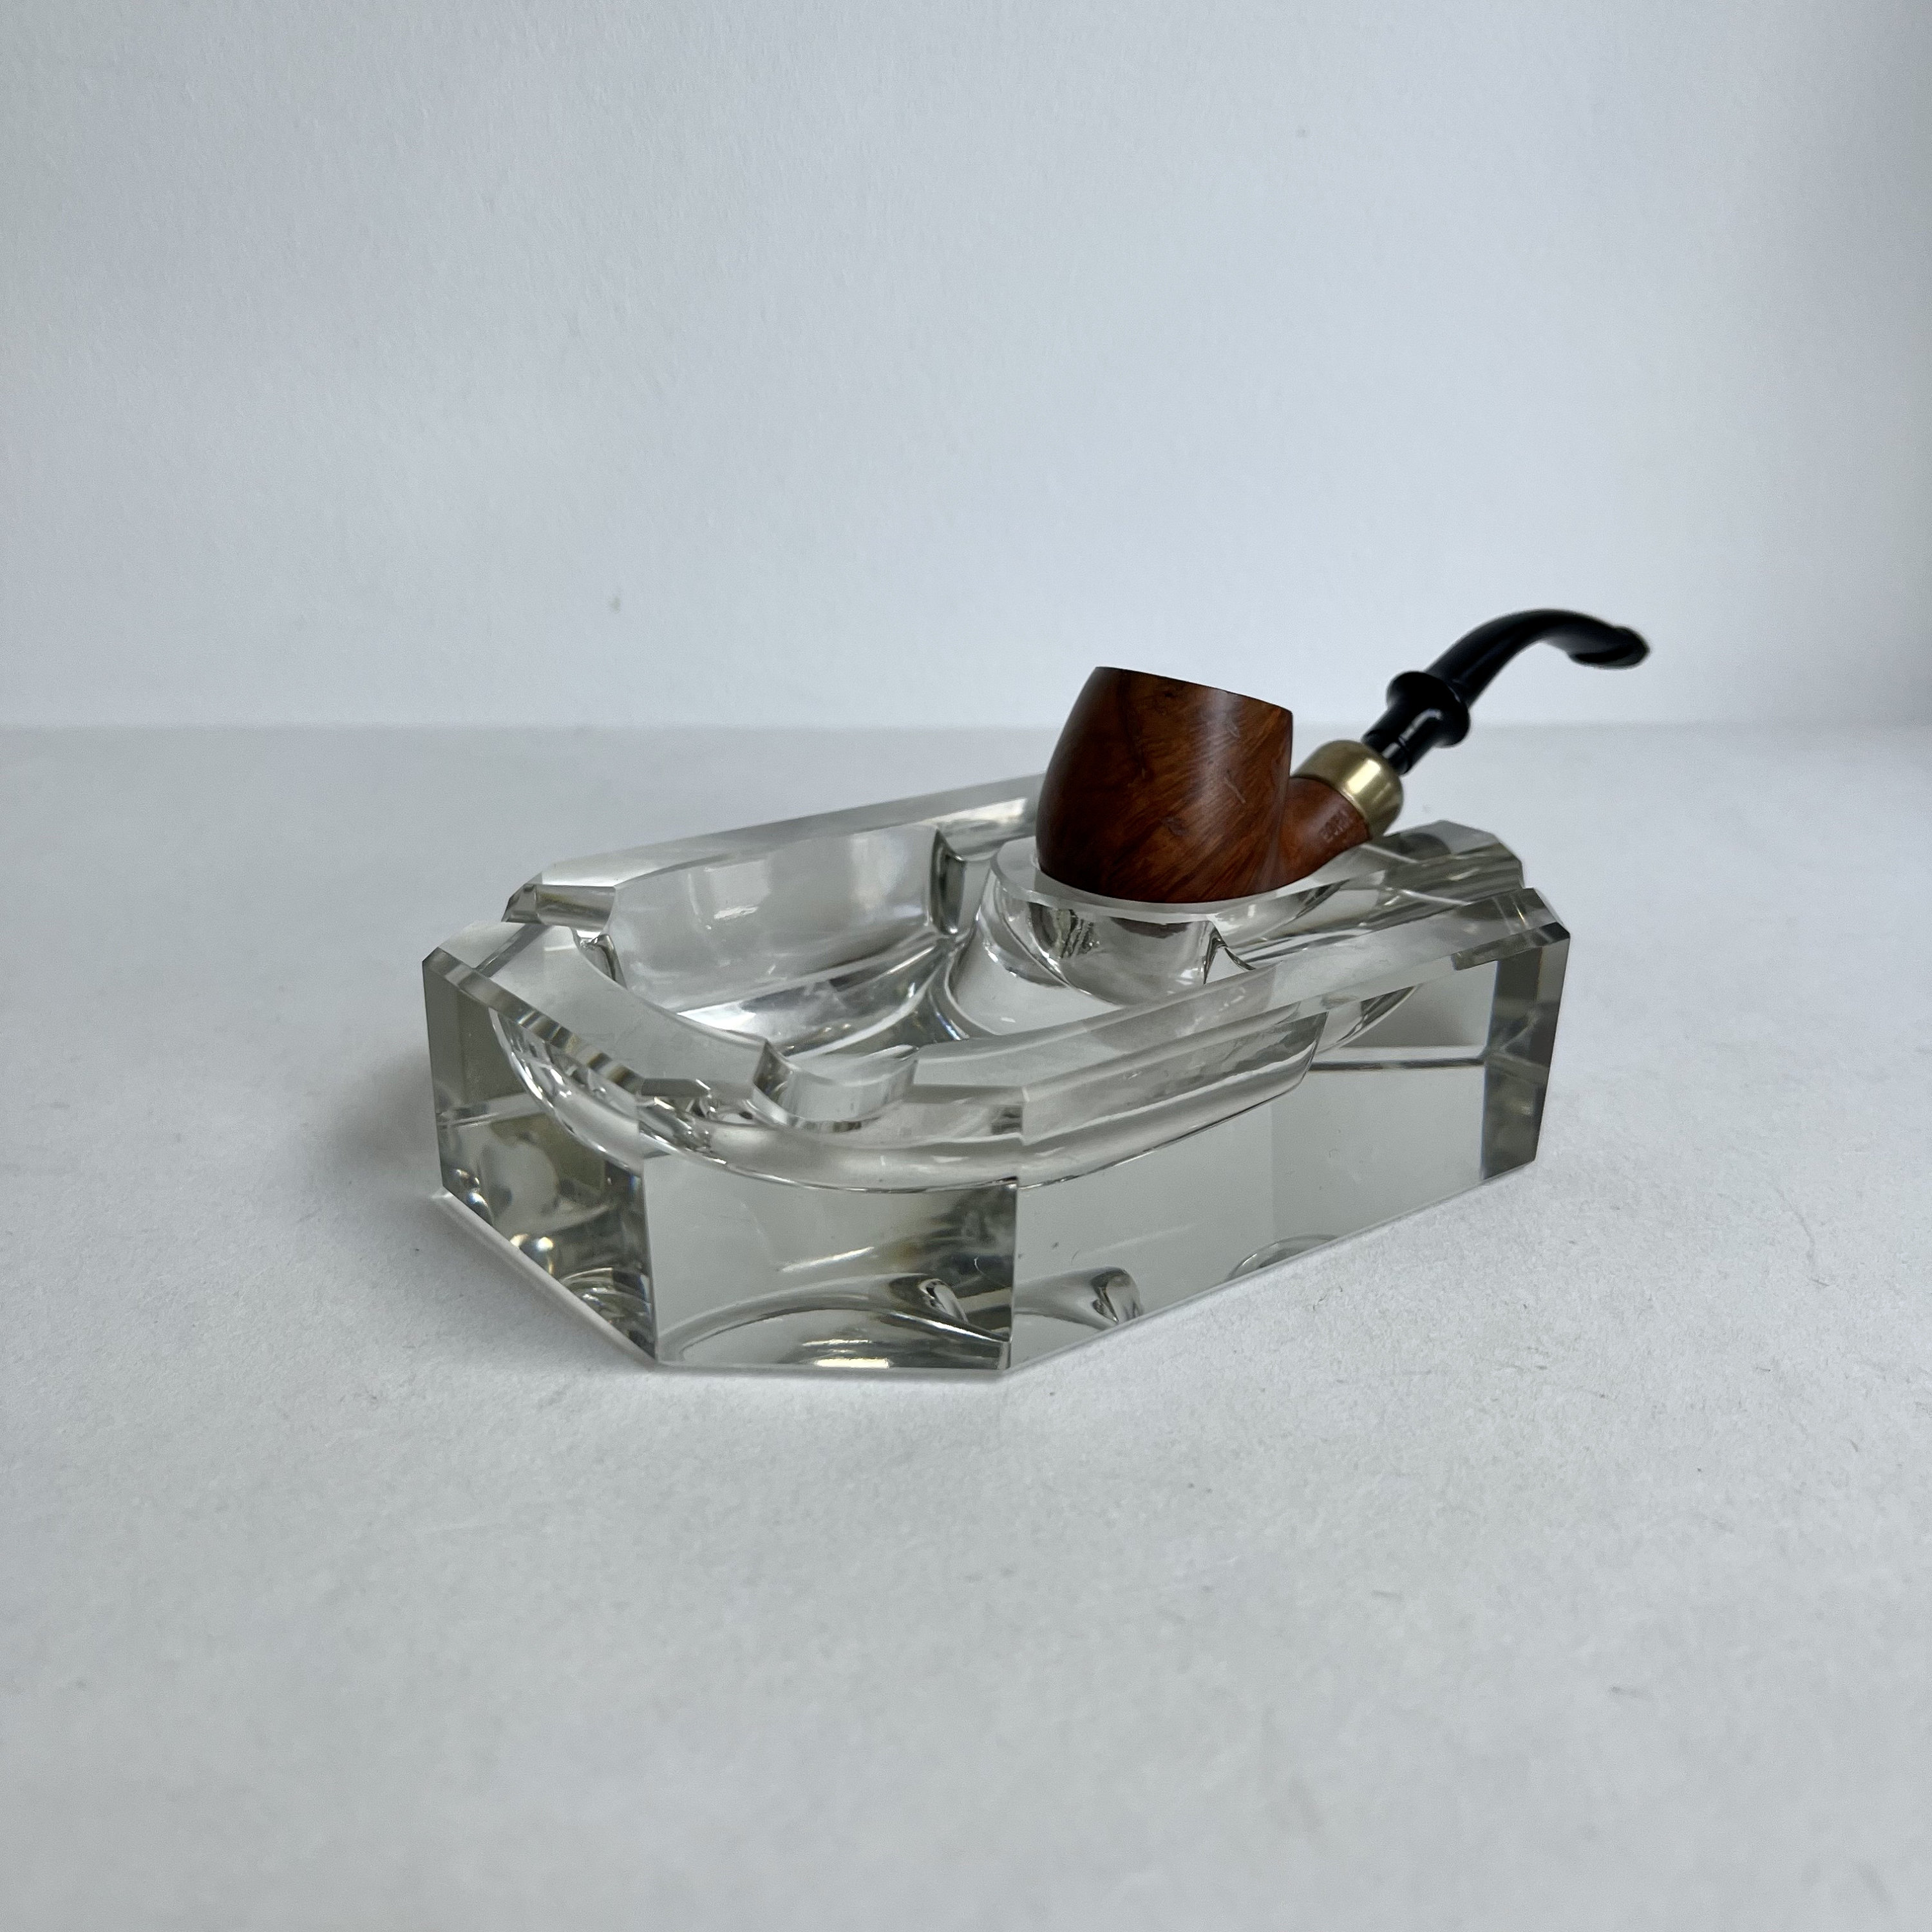 GERMANUS Zigarrenascher Kristall Glas Zigarren Aschenbecher - Blume